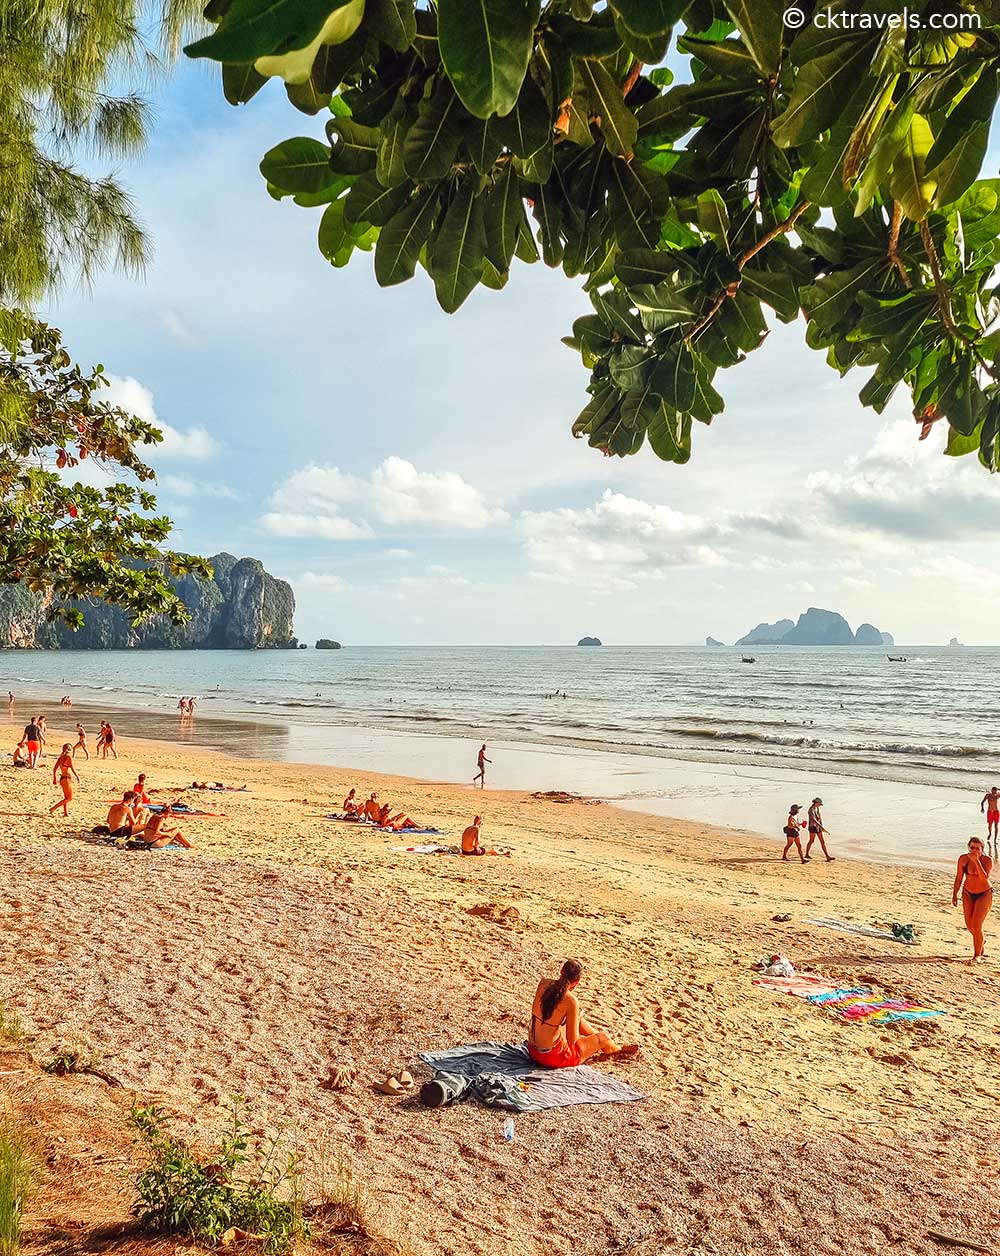 Livlig at tilføje kalligraf 16 things to do in Ao Nang Beach, Krabi, Thailand - CK Travels